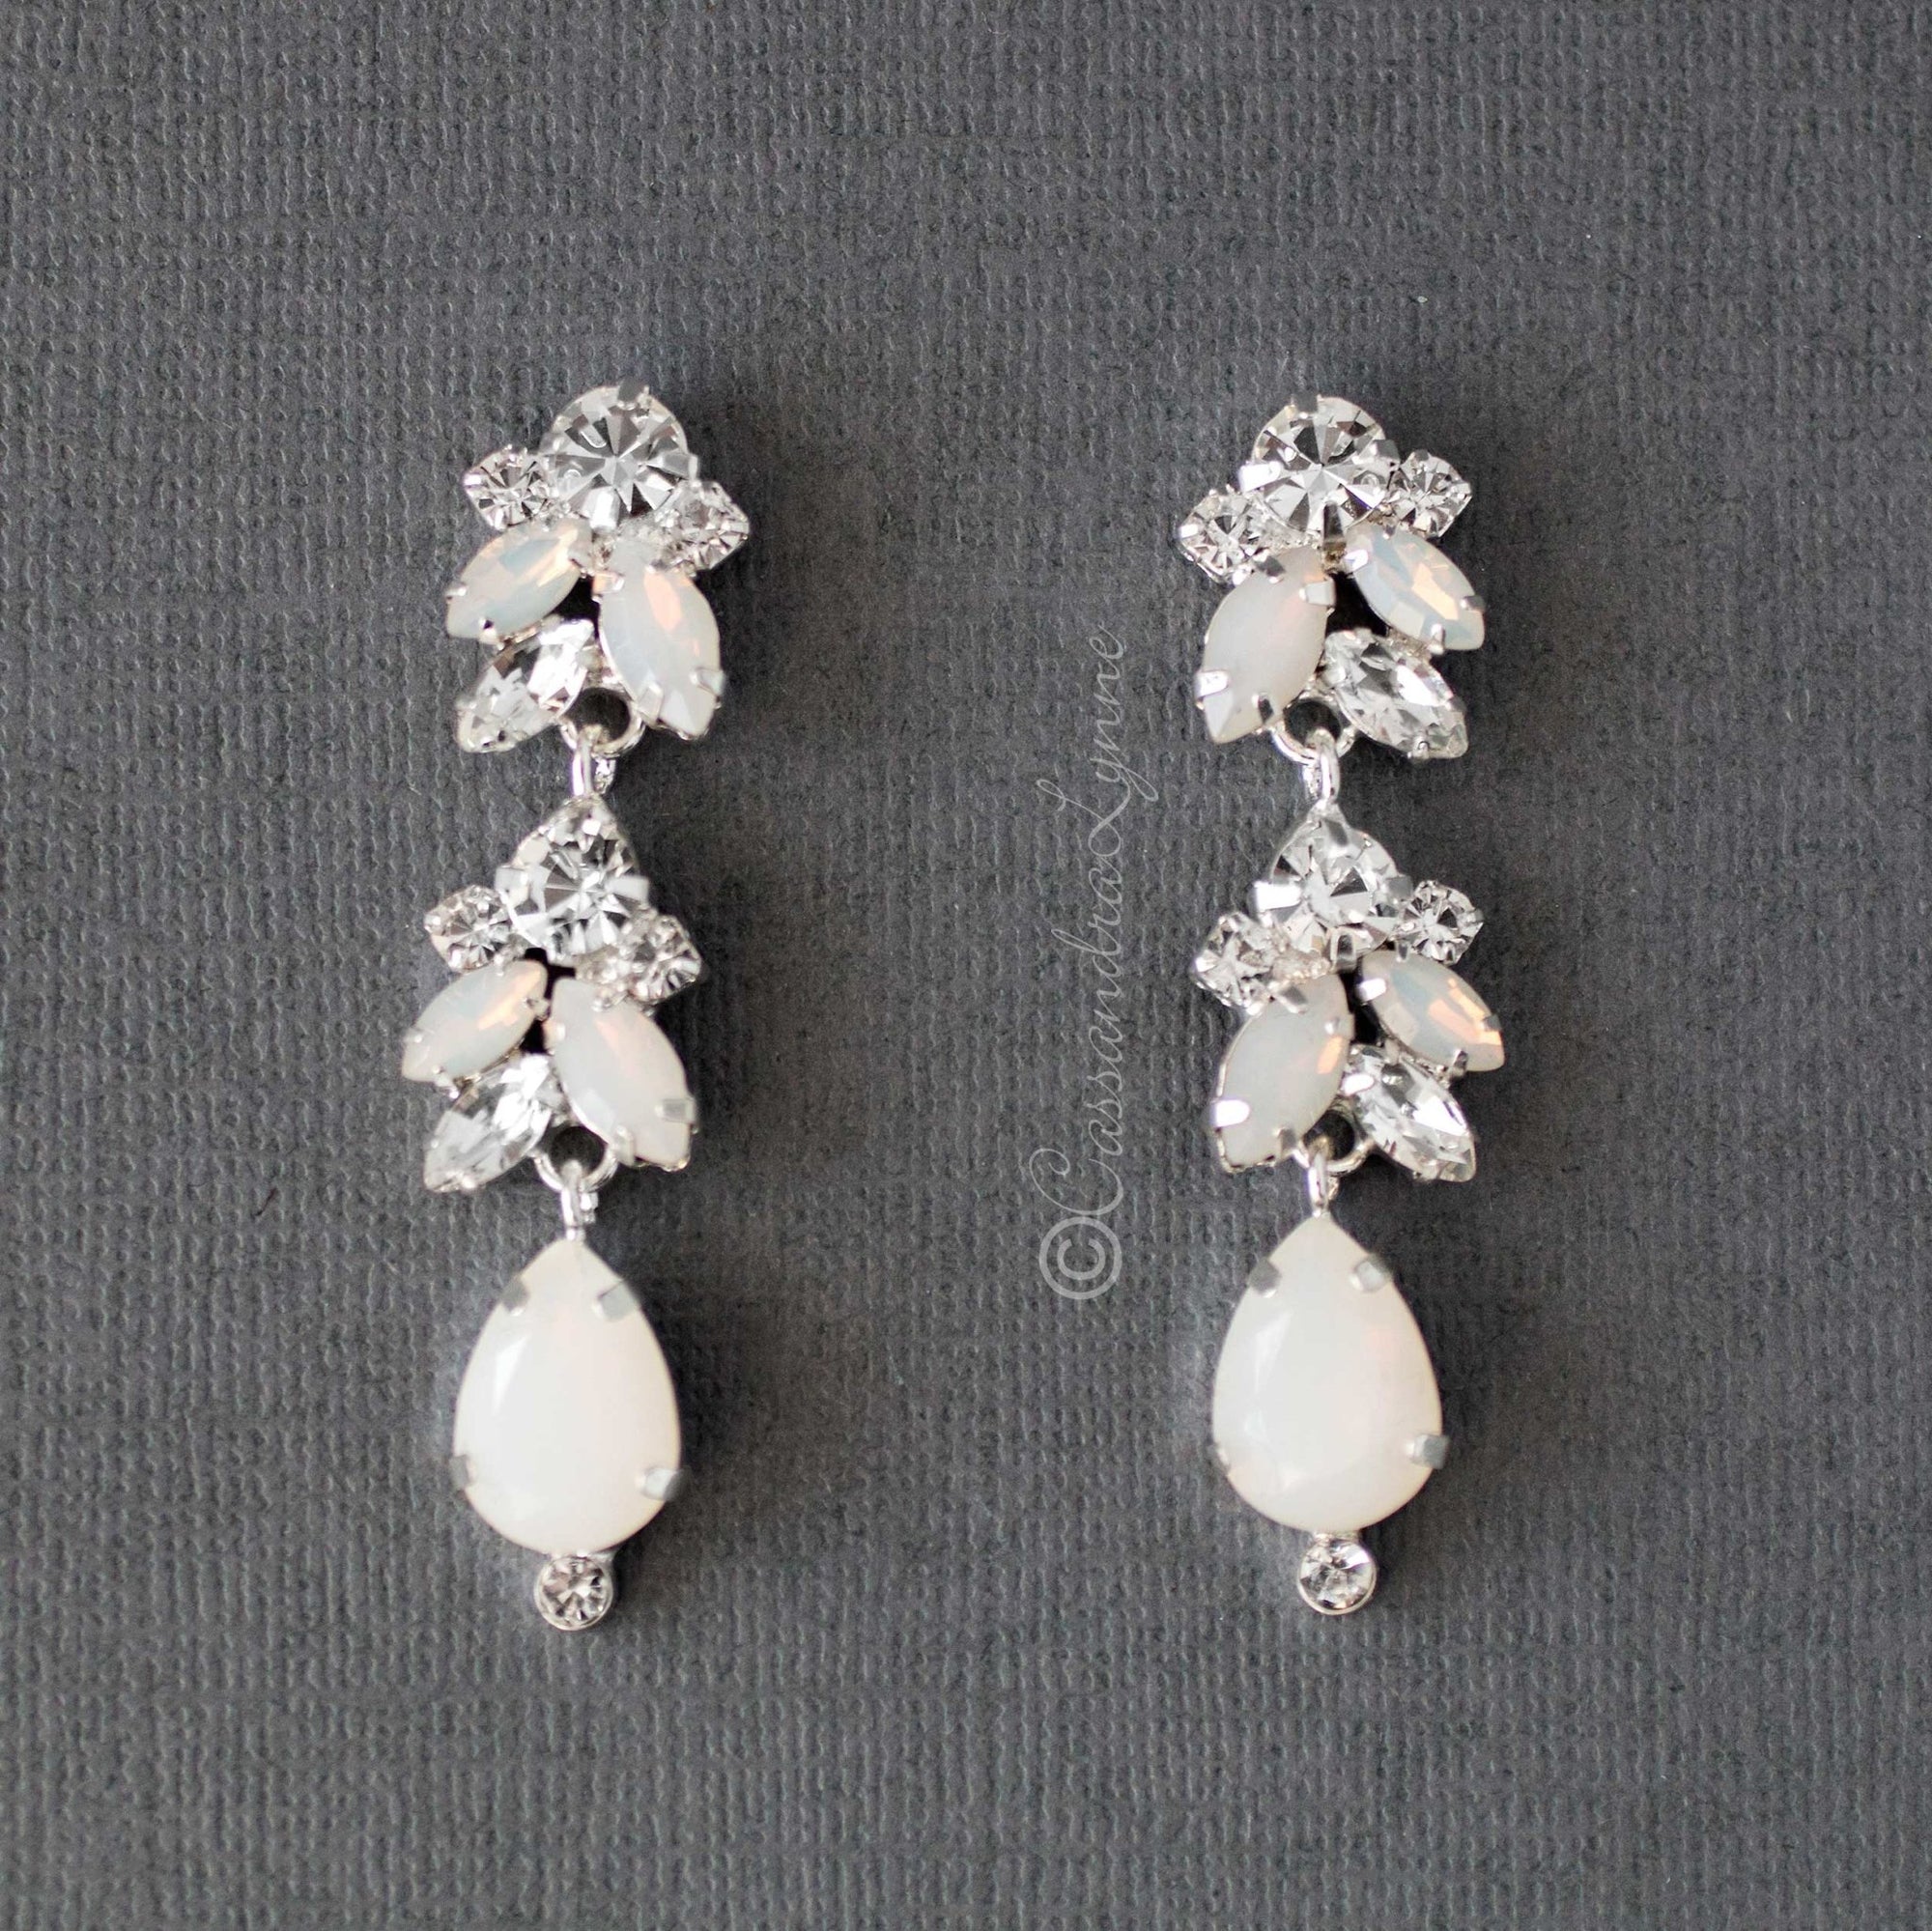 Opal Crystal Wedding Earrings - Cassandra Lynne